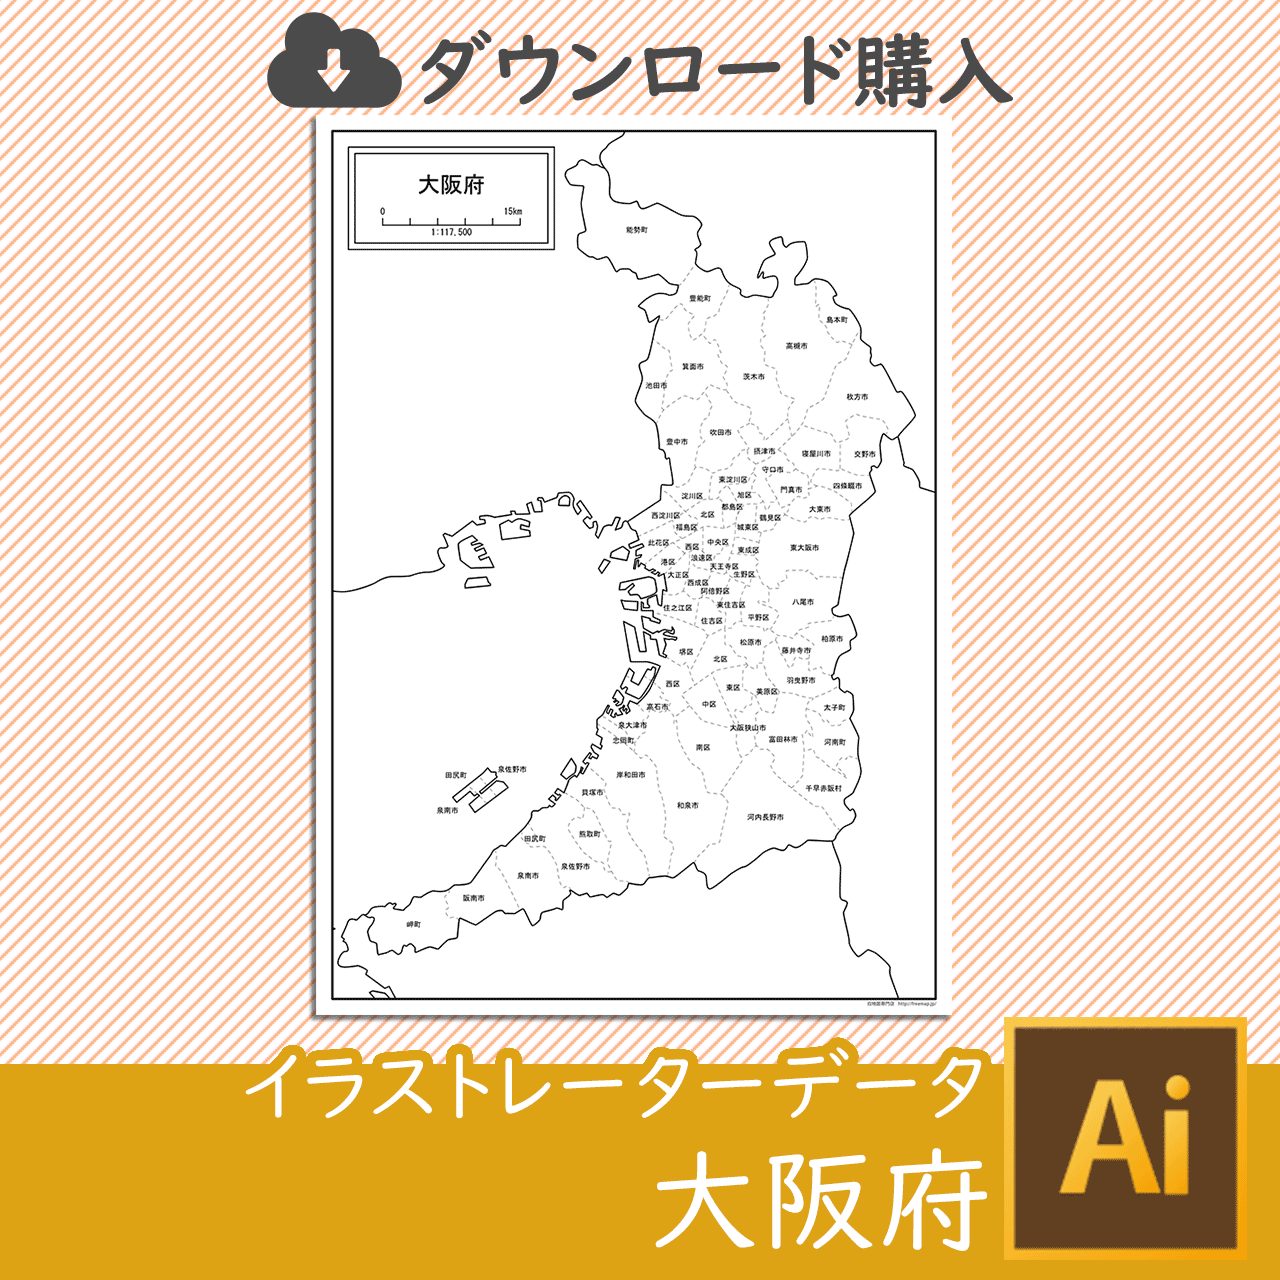 大阪府のaiデータのサムネイル画像